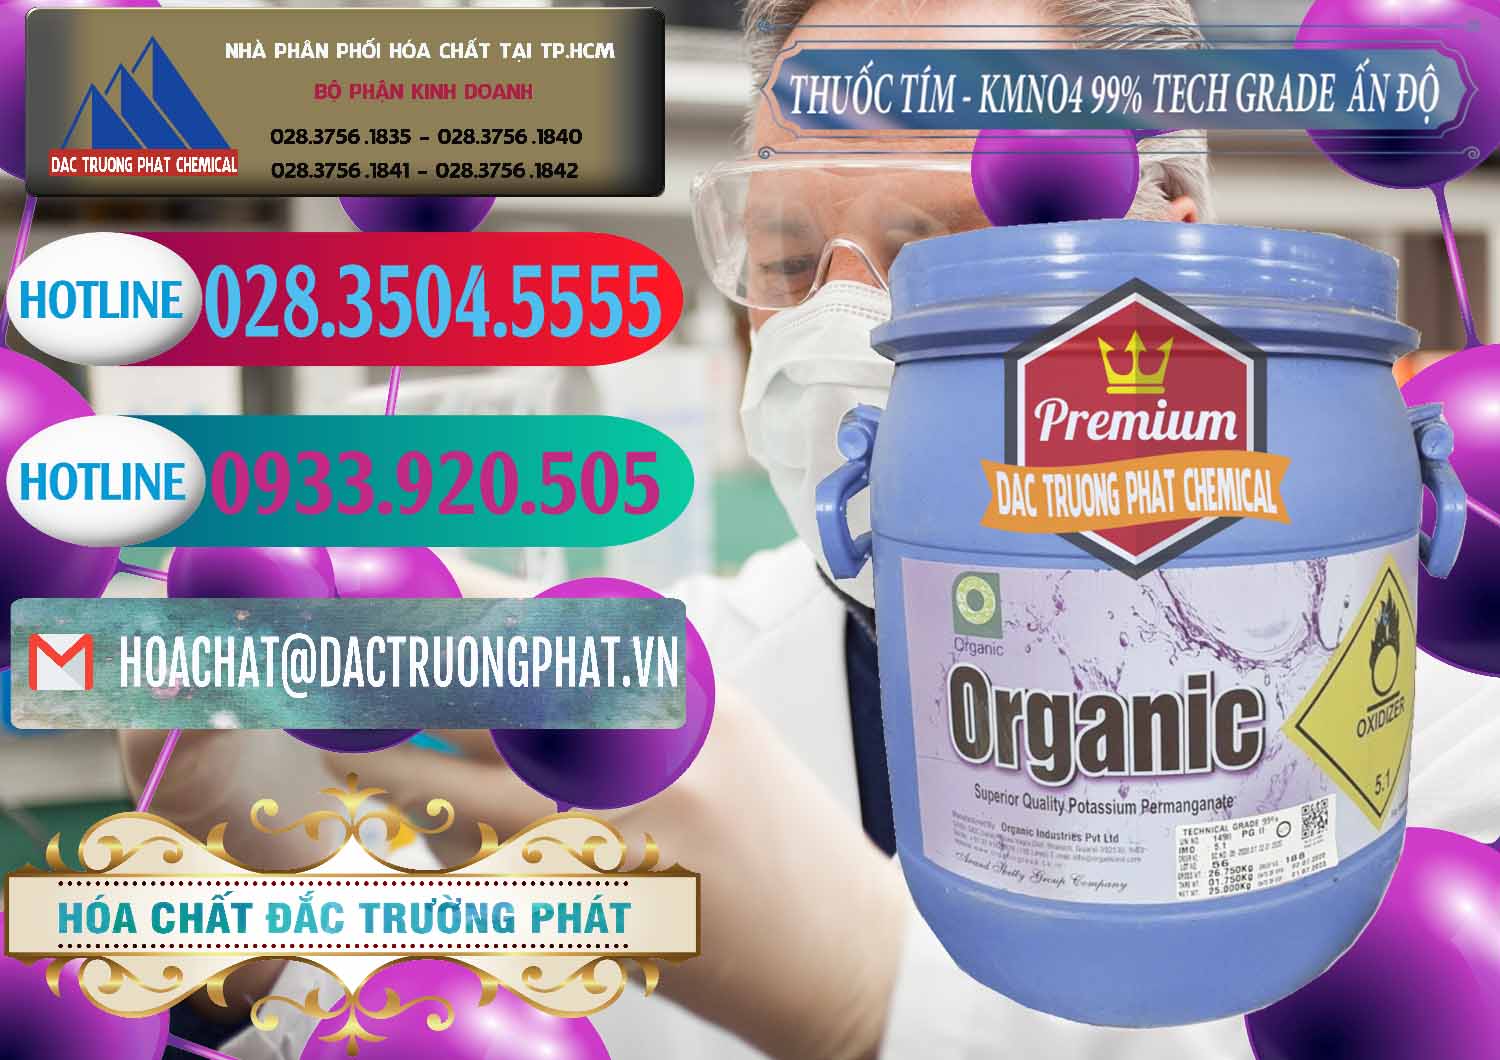 Nơi phân phối _ bán Thuốc Tím - KMNO4 99% Organic Group Ấn Độ India - 0250 - Chuyên cung cấp & bán hóa chất tại TP.HCM - truongphat.vn